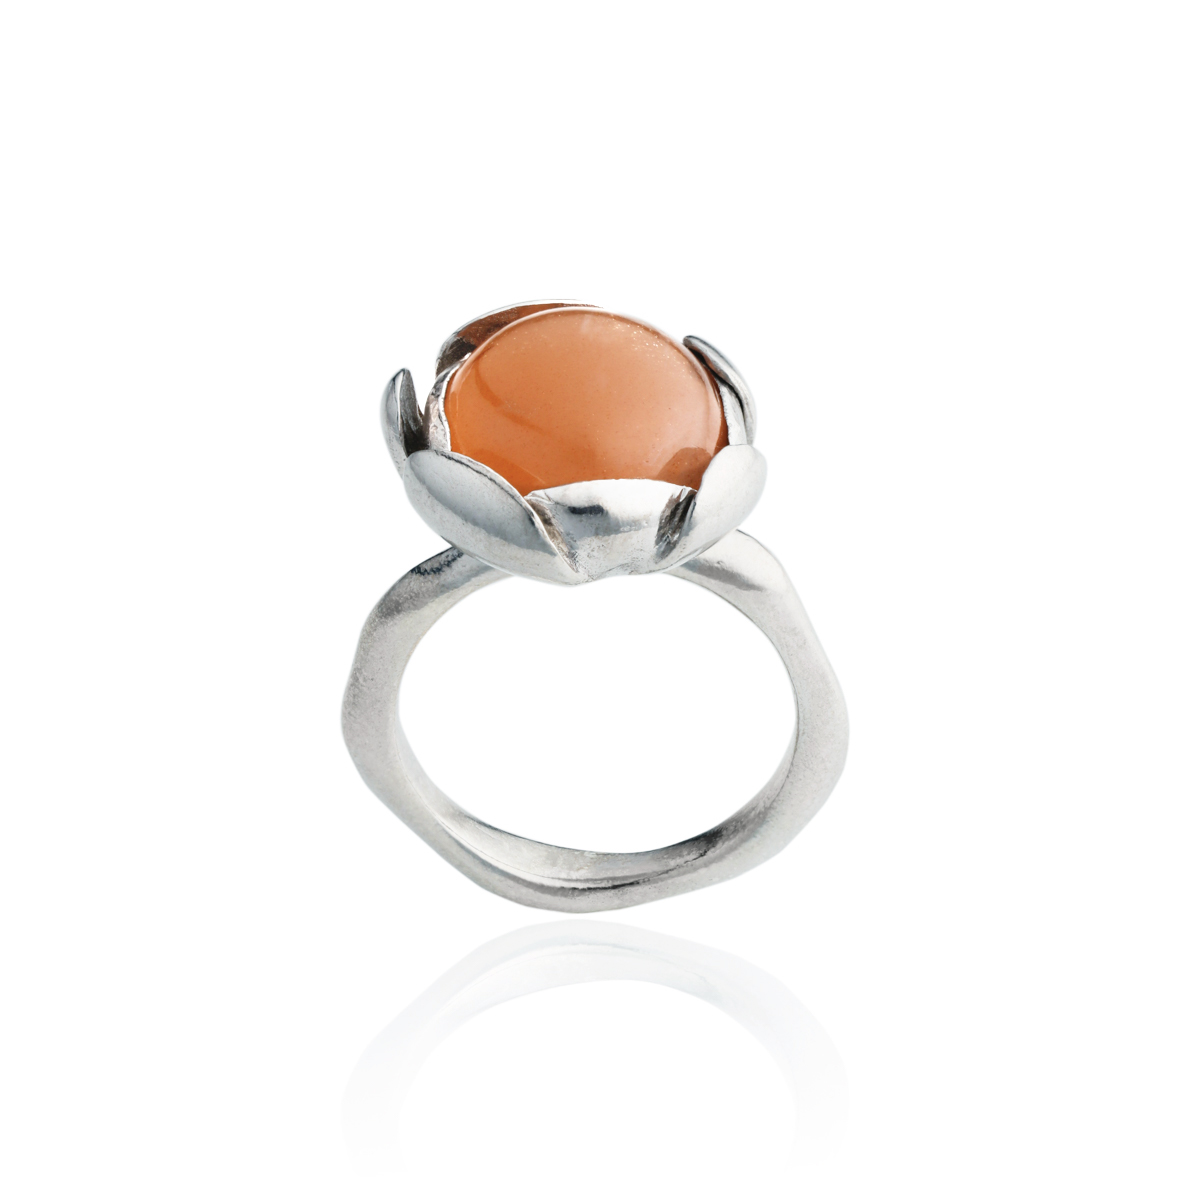 Elegant peach ring